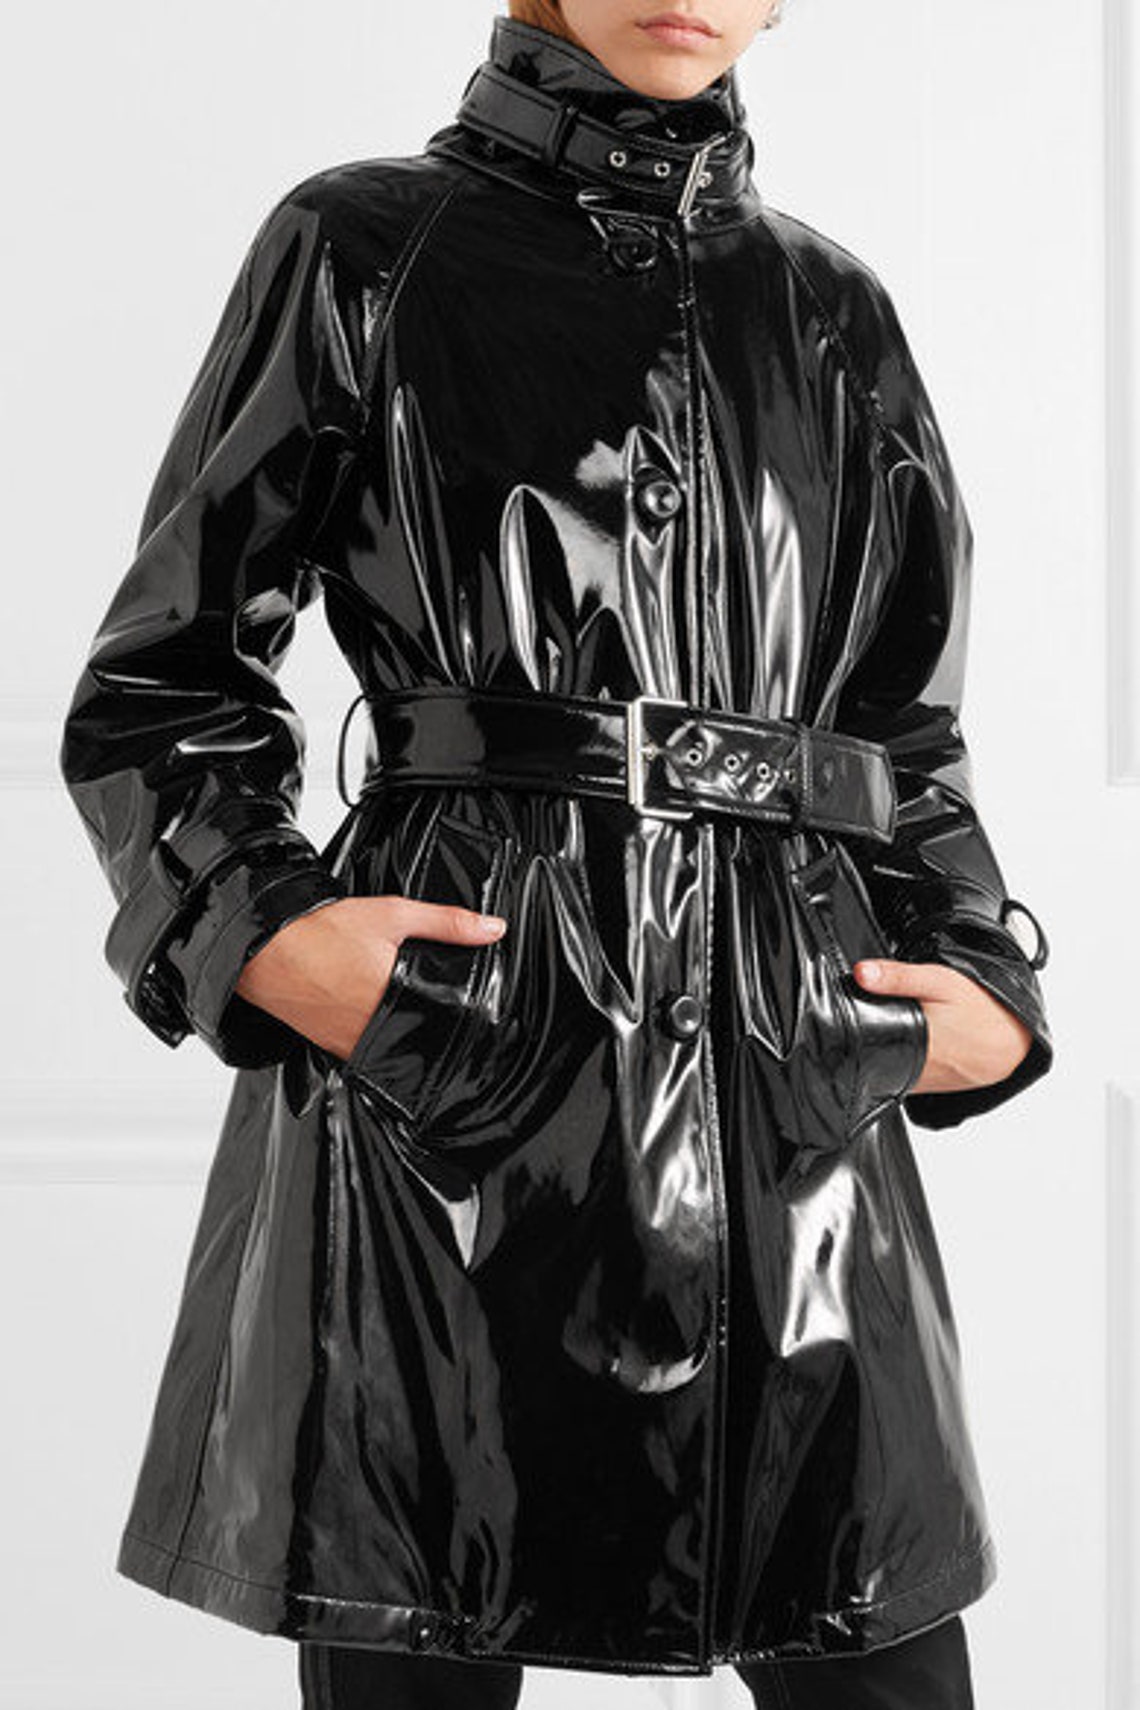 Vinyl Black Long Trench Coat For Womens Black Long Coat | Etsy